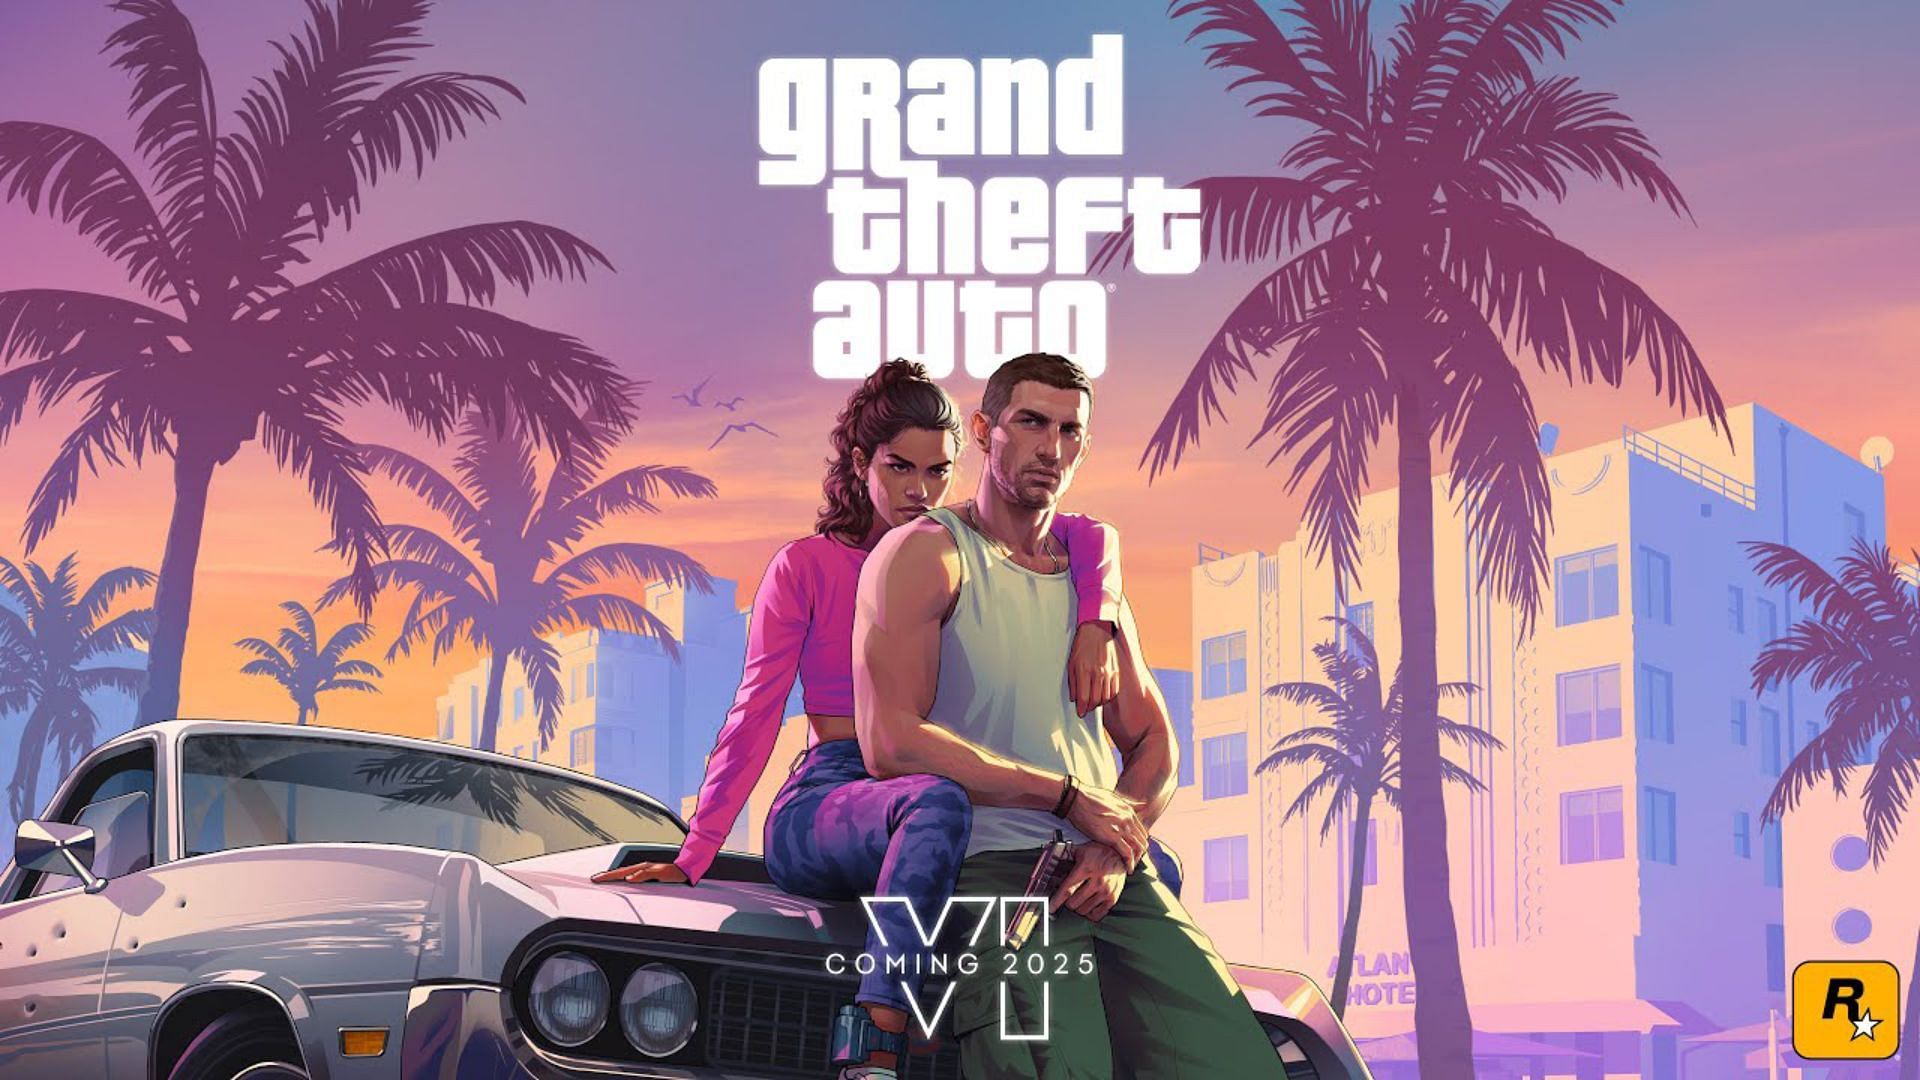 The official artwork of Grand Theft Auto 6 (Image via Rockstar Games)